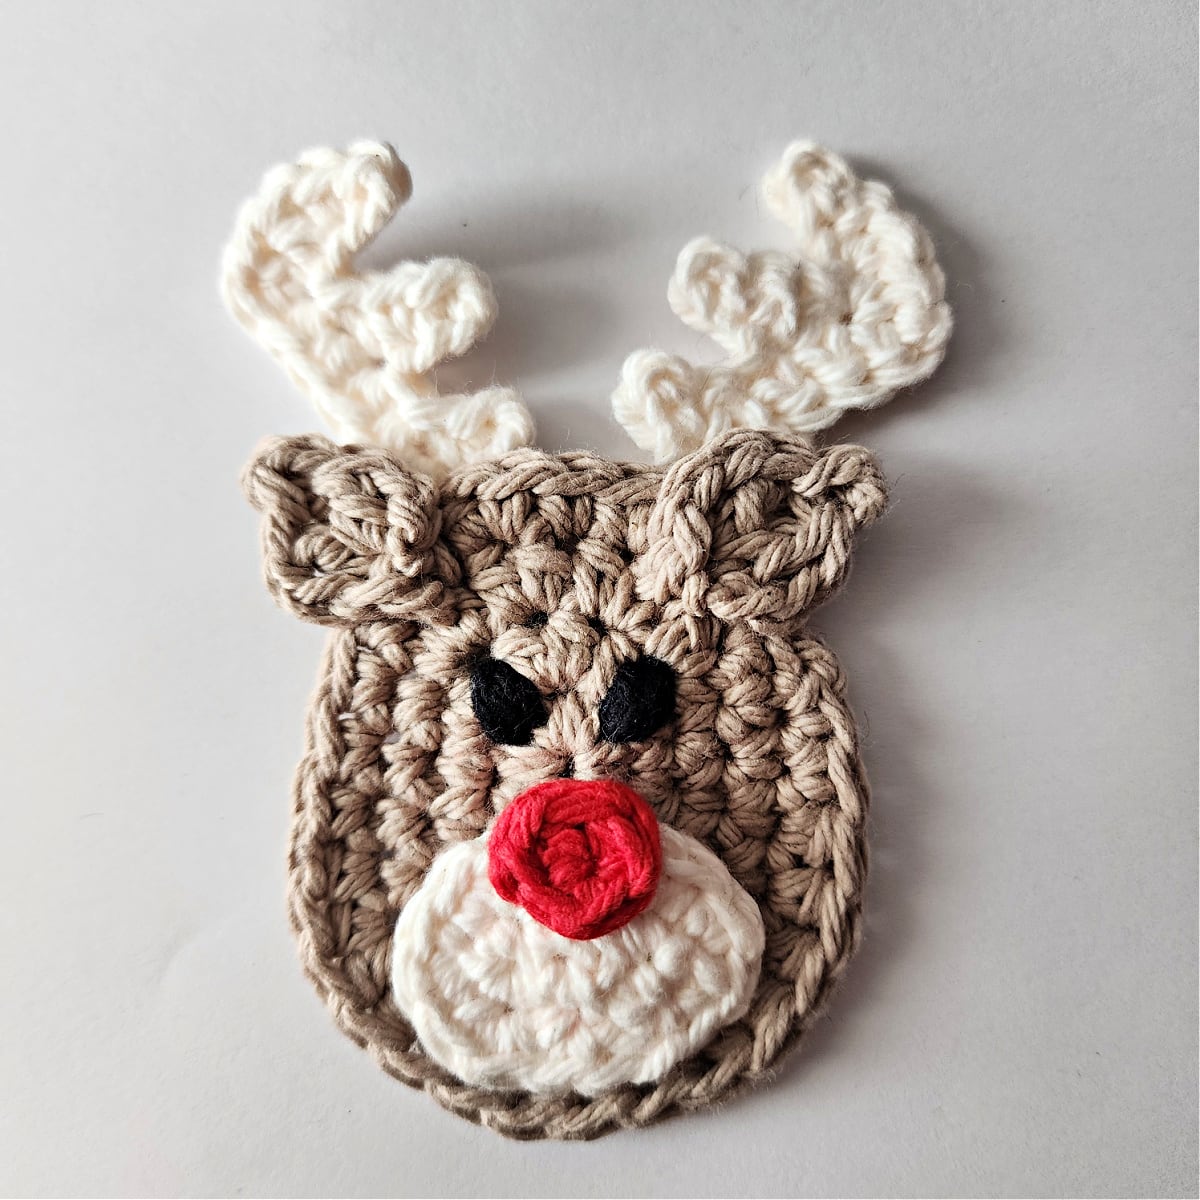 crochet reindeer ornament tutorial for adding ears